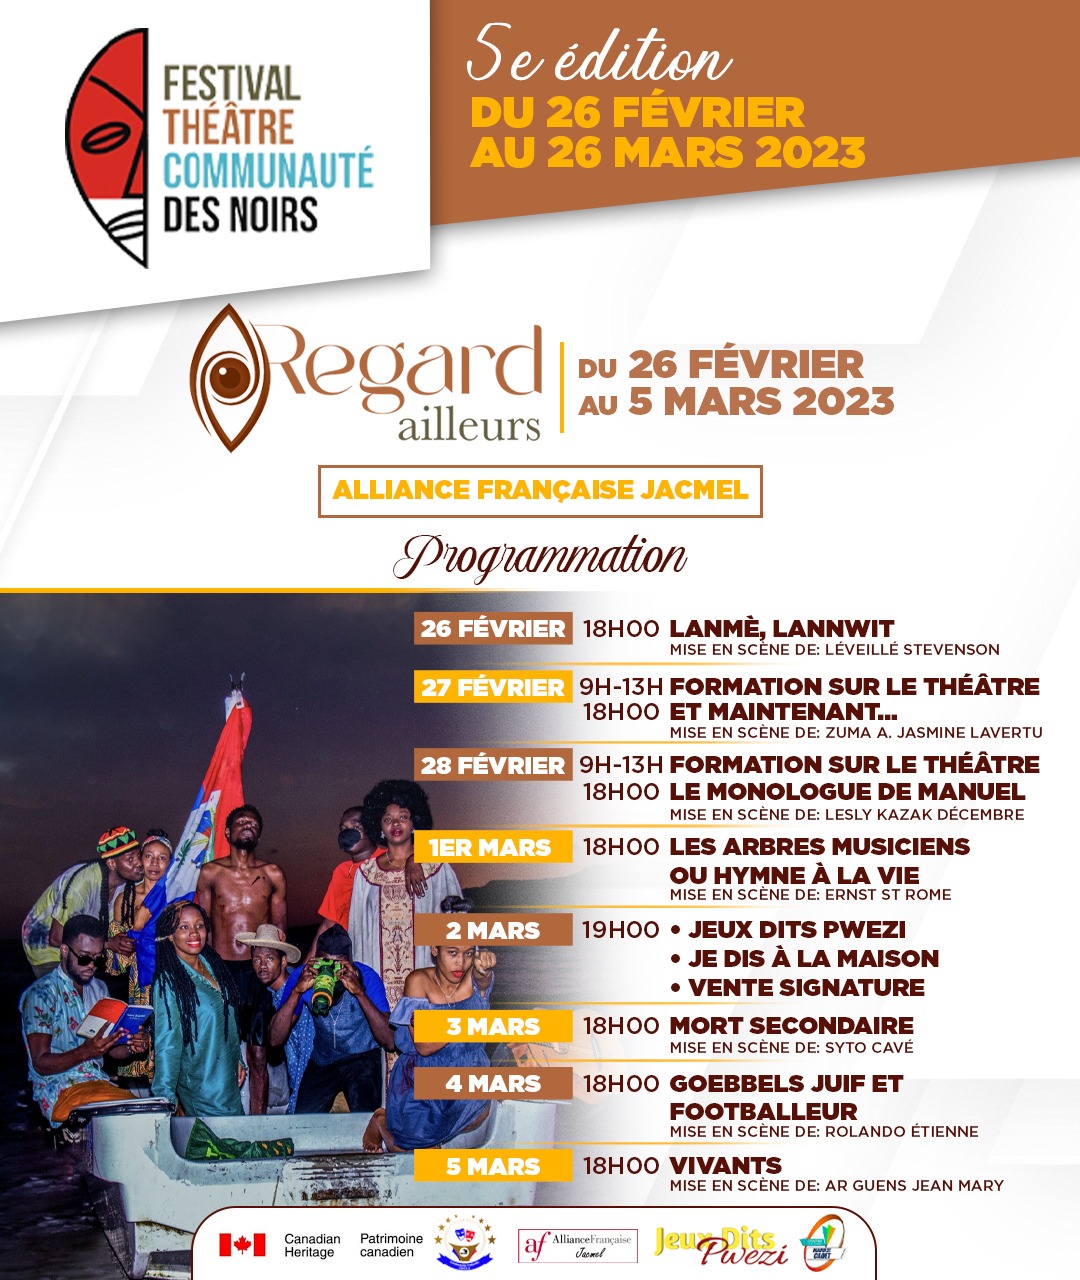 5ème édition du Festival théâtre communauté des noirs : “Regard ailleurs”, à Jacmel